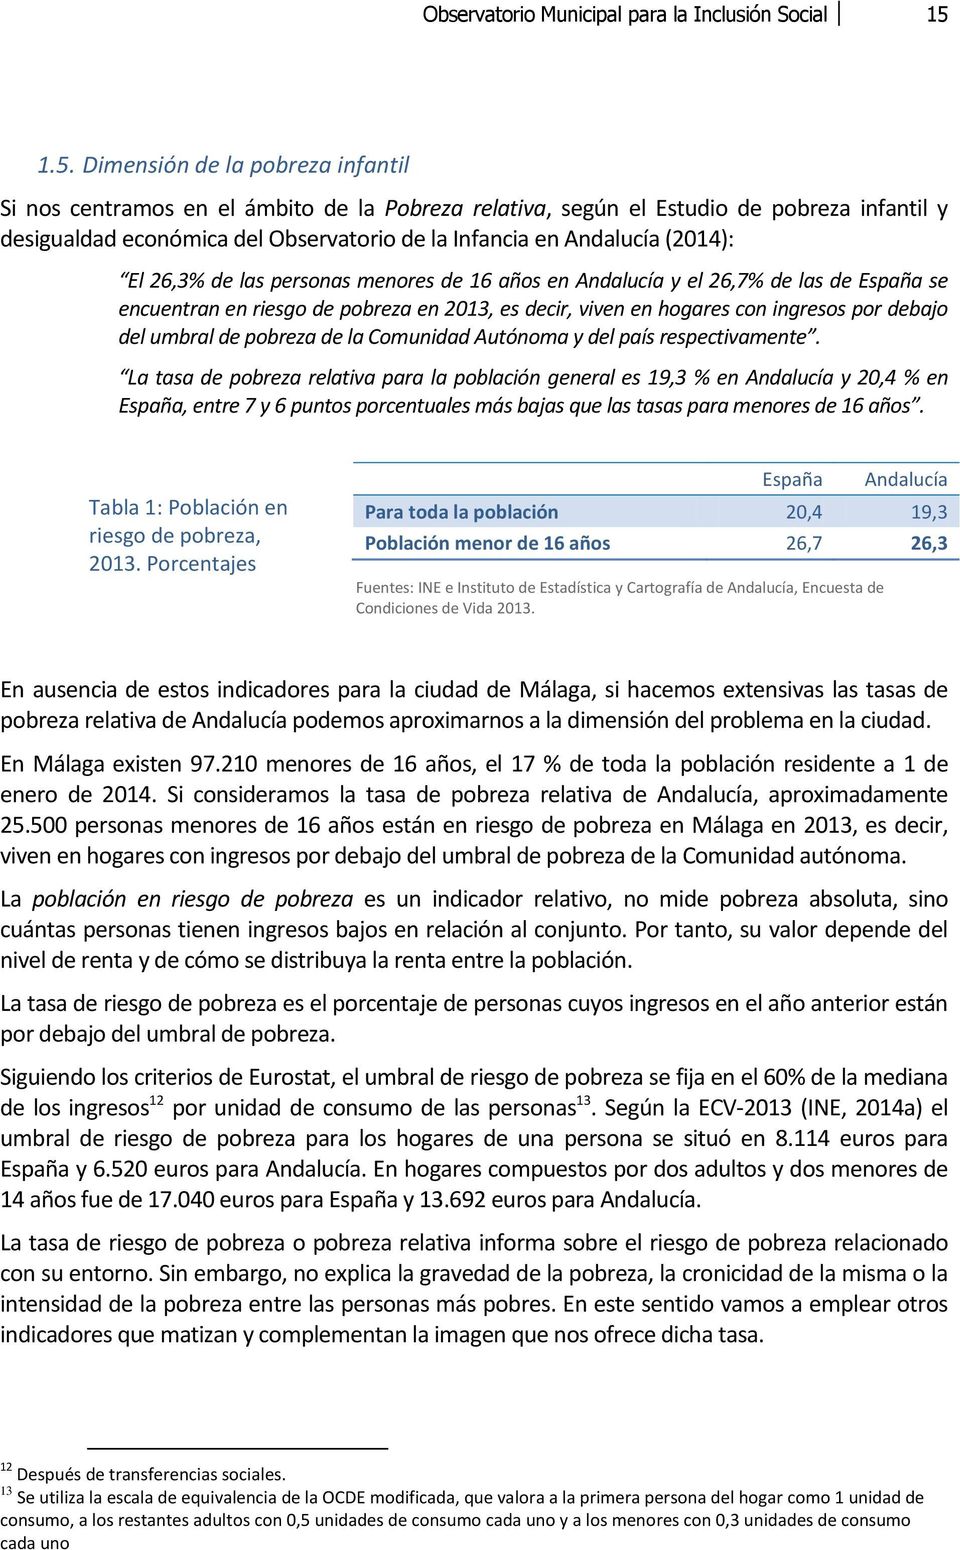 (2014): El 26,3% de las personas menores de 16 años en Andalucía y el 26,7% de las de España se encuentran en riesgo de pobreza en 2013, es decir, viven en hogares con ingresos por debajo del umbral